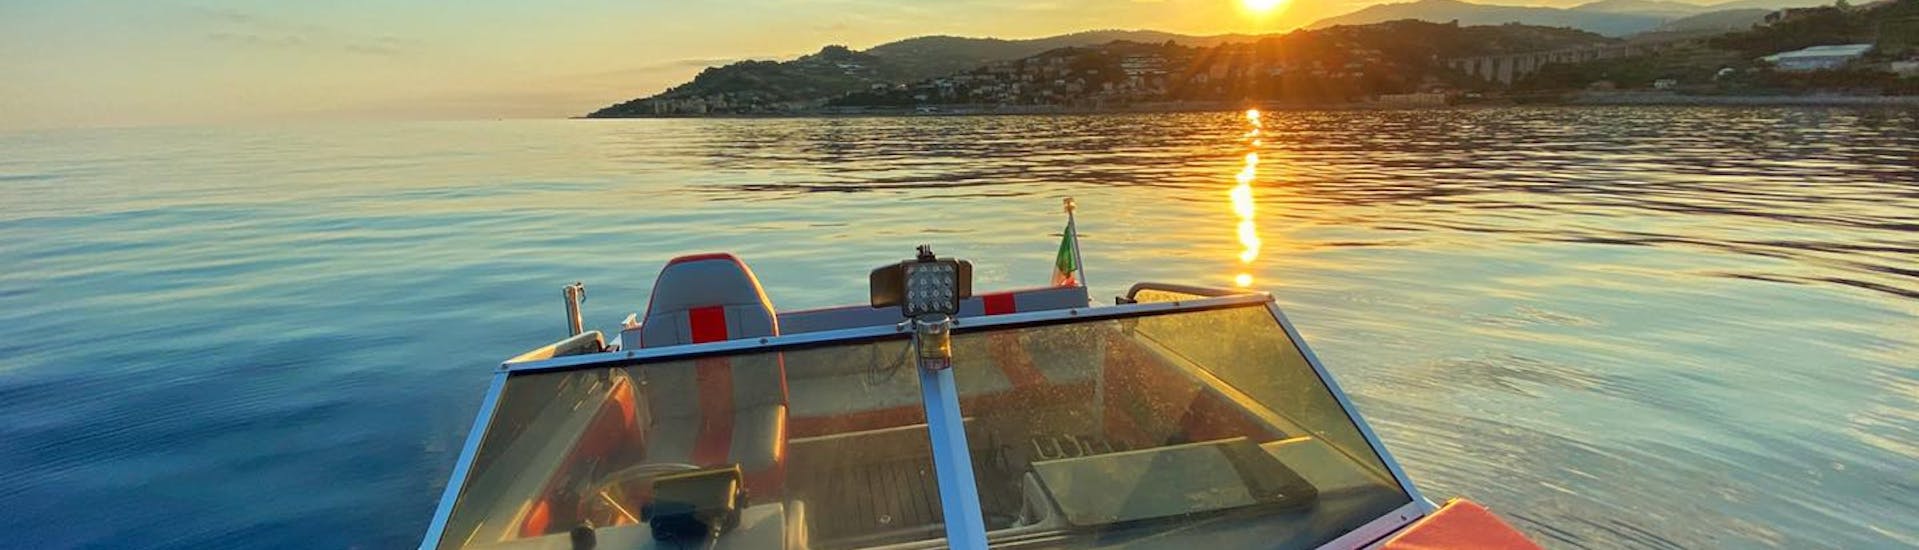 Giro in barca privata da Arma di Taggia con aperitivo al tramonto.